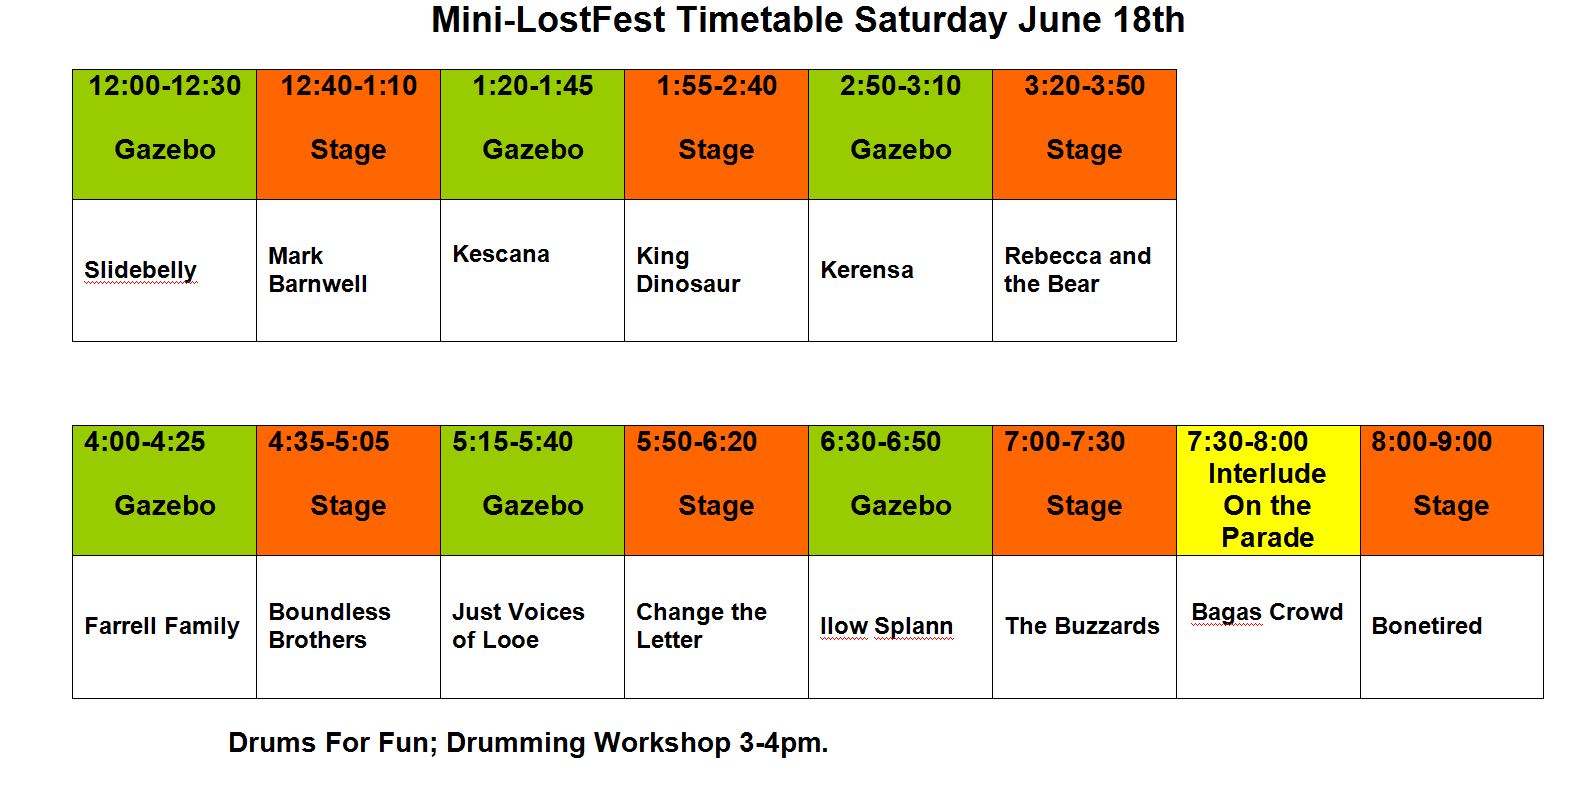 Mini Lostfest Timetable